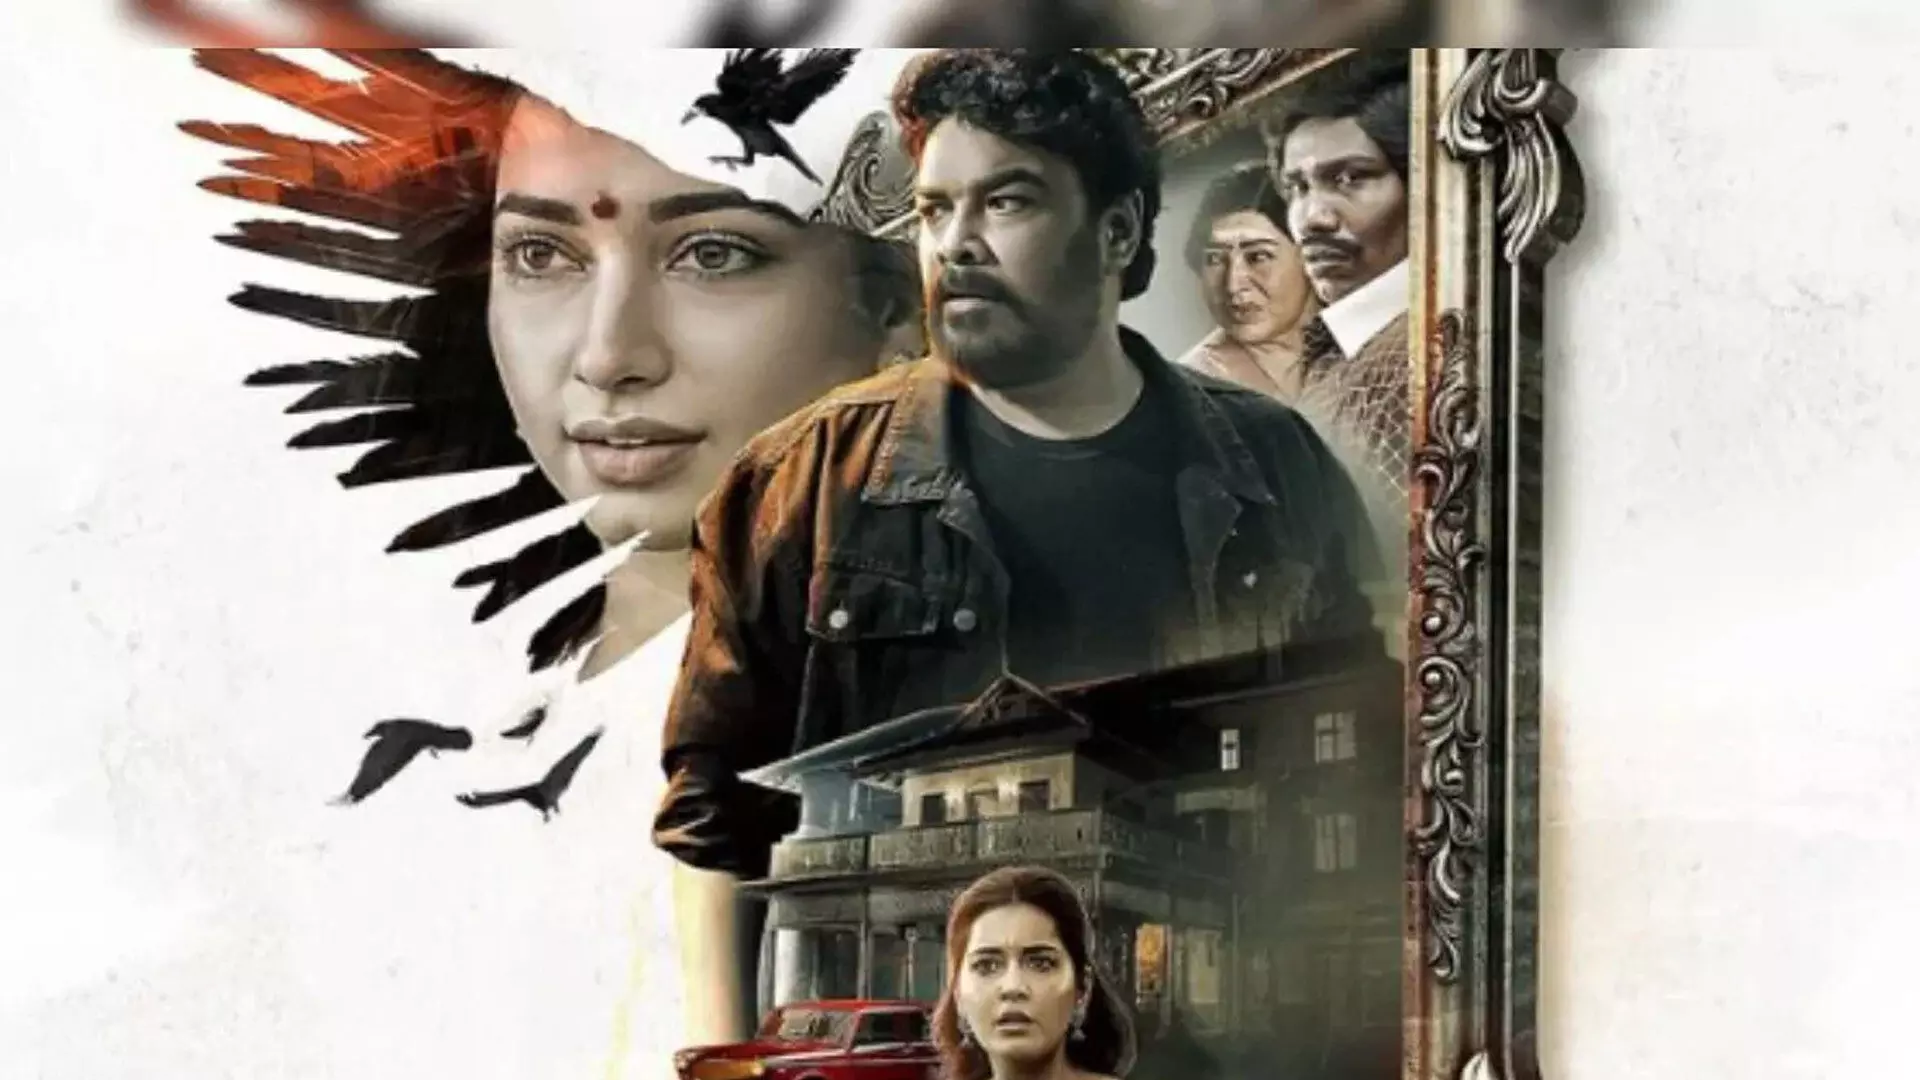 तमन्ना और राशि खन्ना की फिल्म को मिली रिलीज डेट